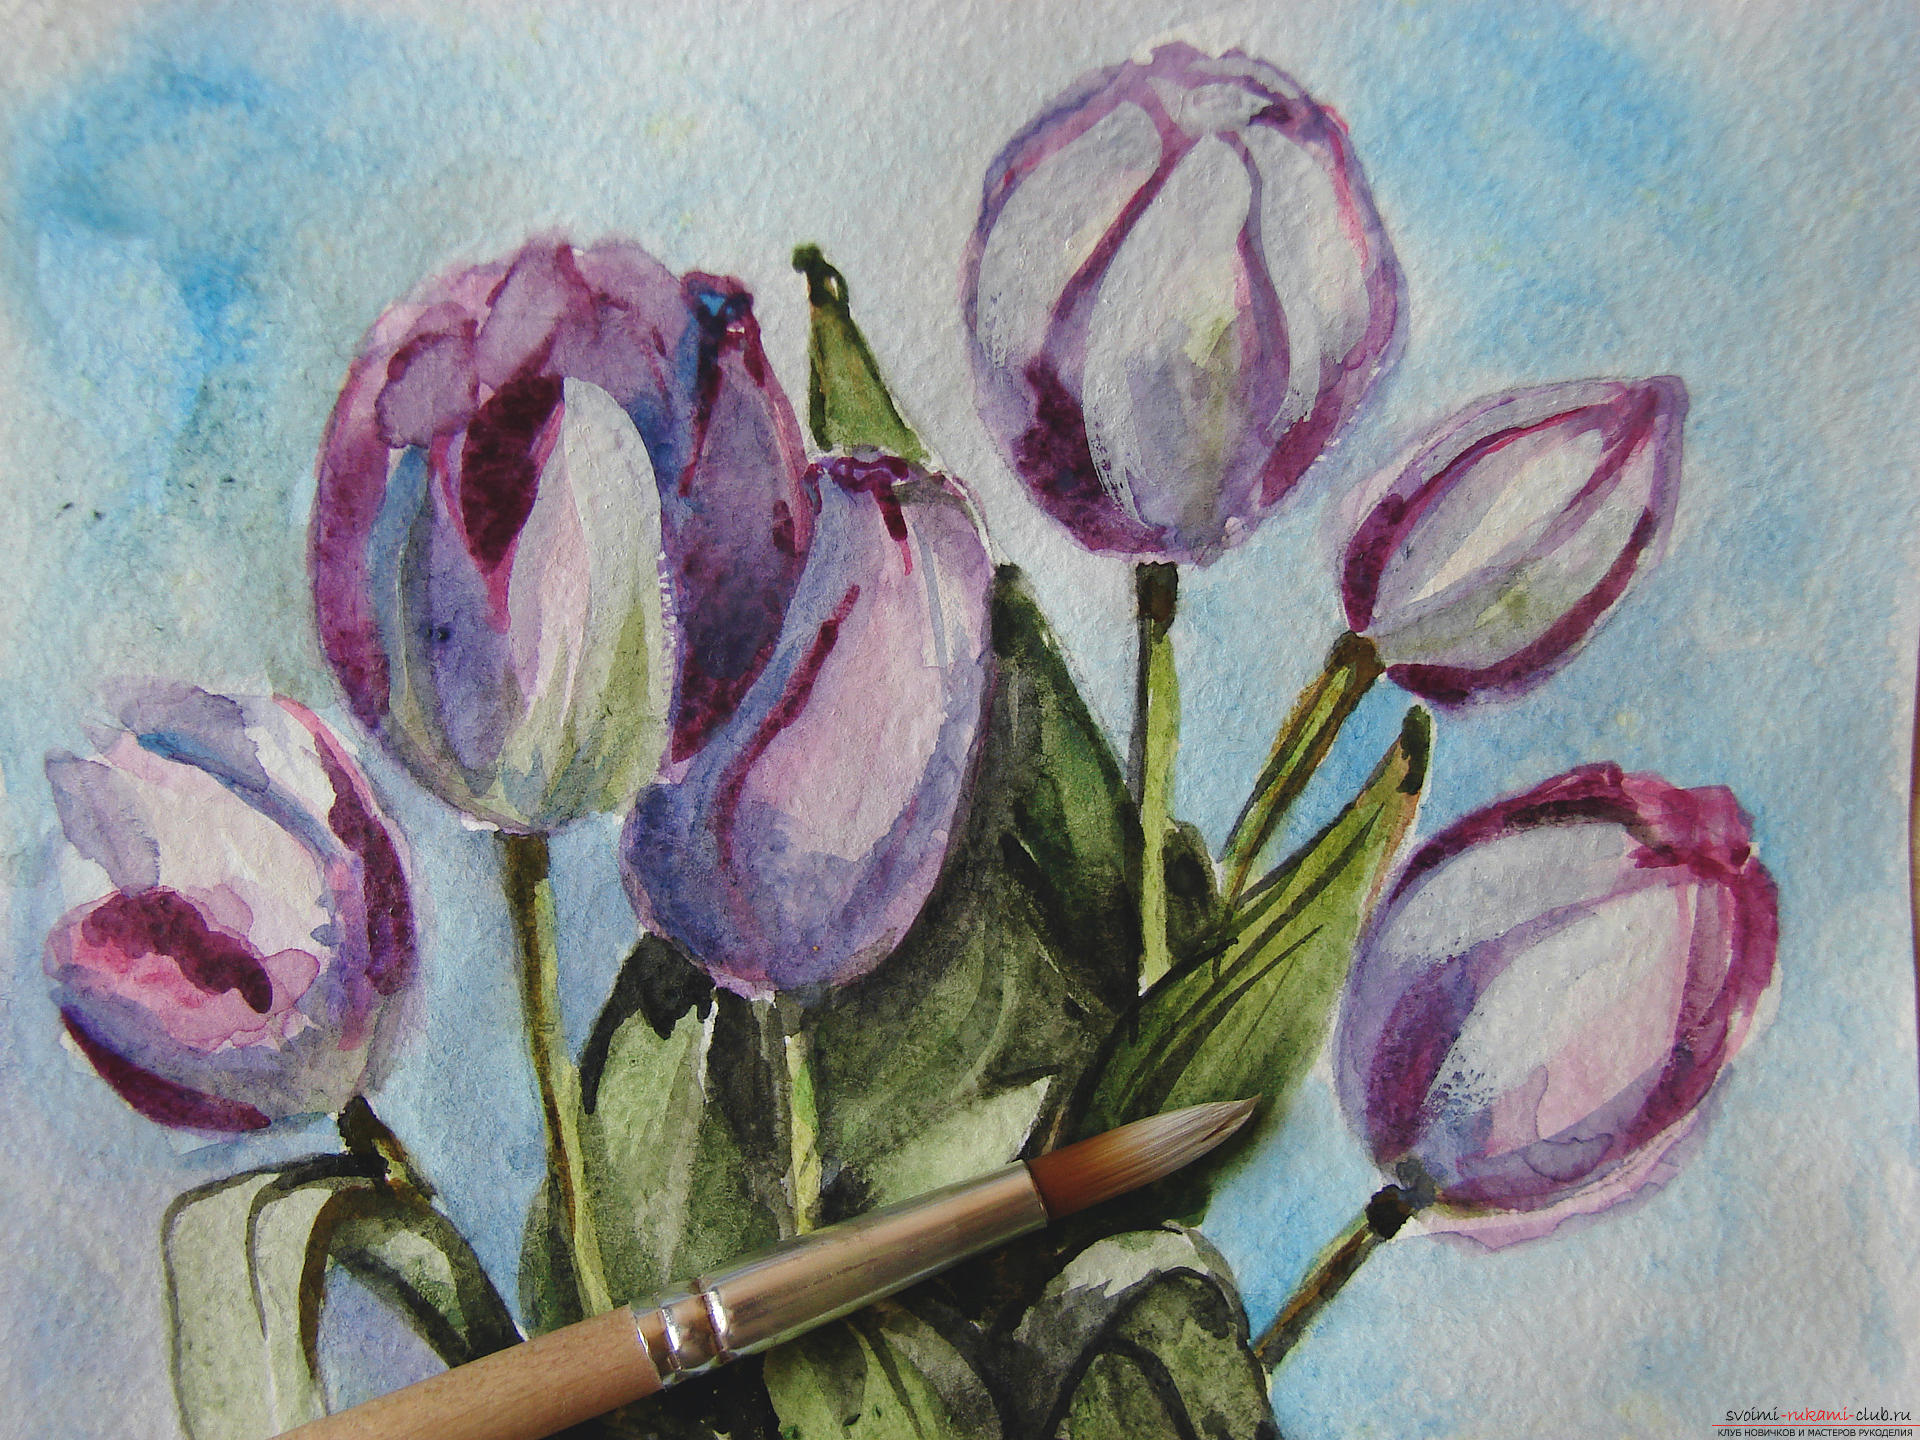 Мастер-класс по рисованию с фото научит как нарисовать цветы, подробно описав как рисуются тюльпаны поэтапно.. Фото №26